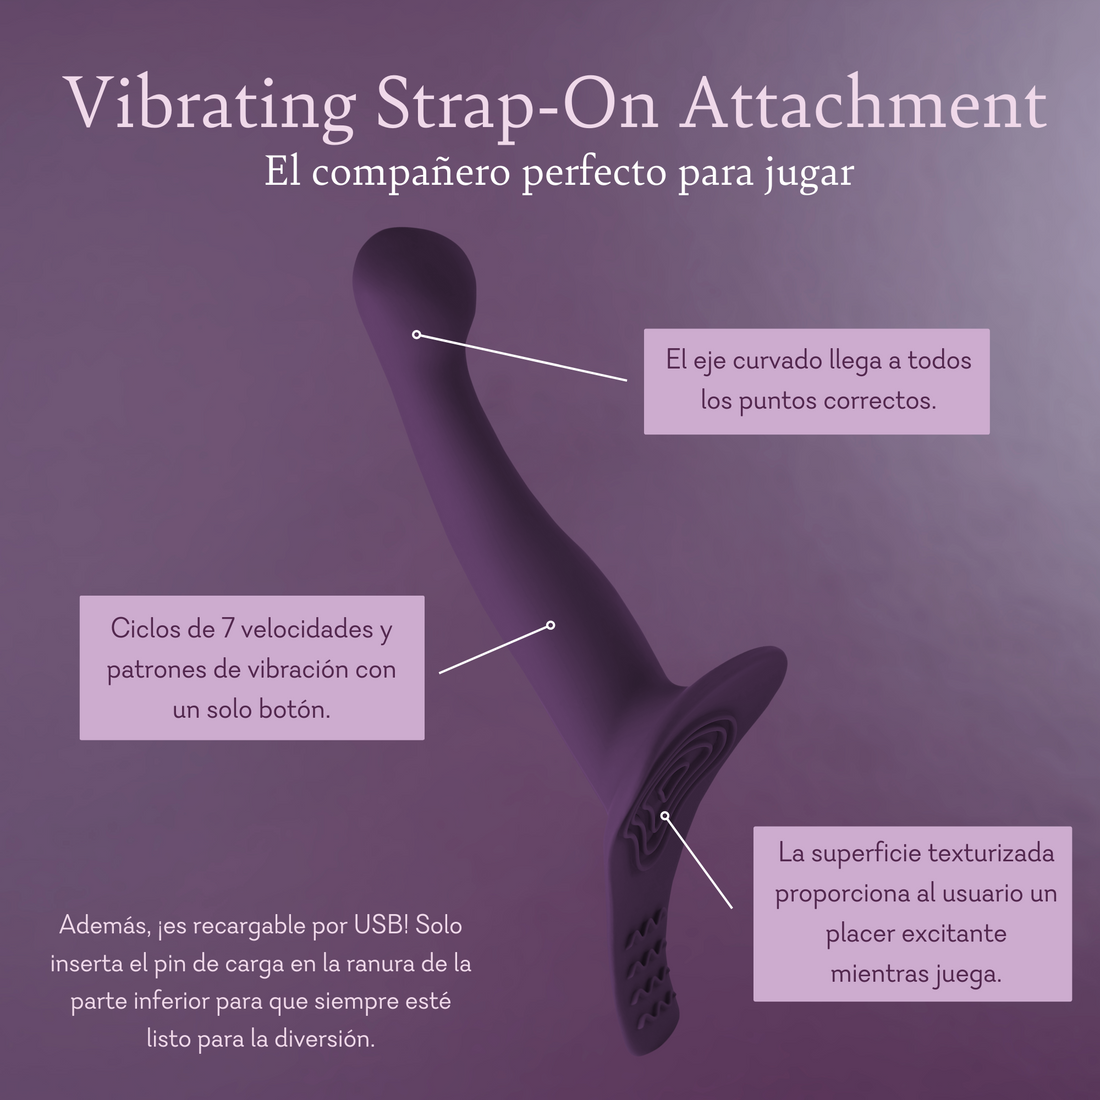 Vibrating Strap-On Attachment